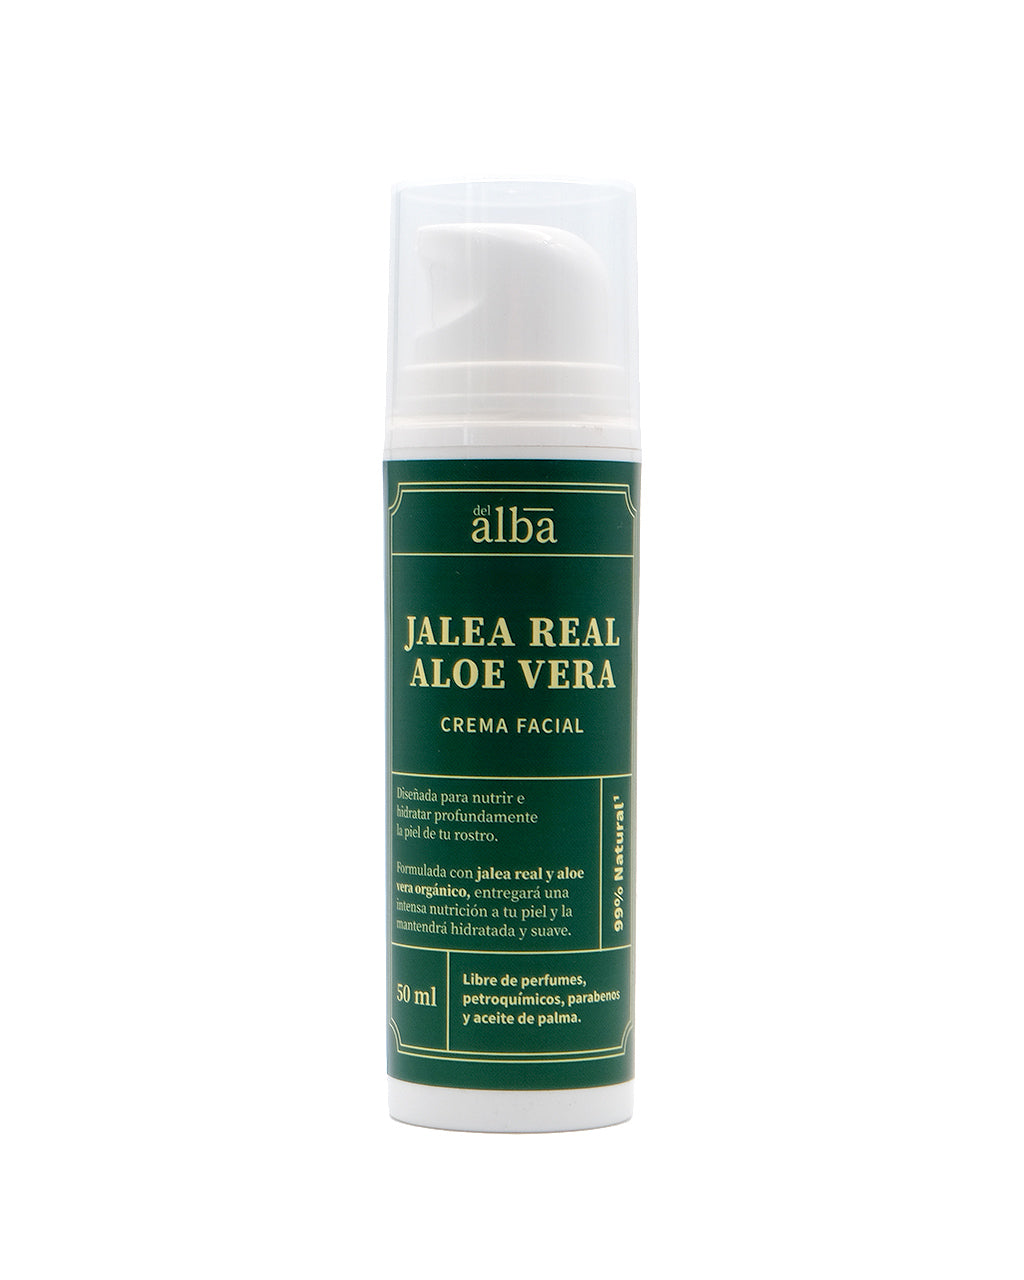 Crema facial Aloe Vera Jalea Real - 50 ml nuevo formato